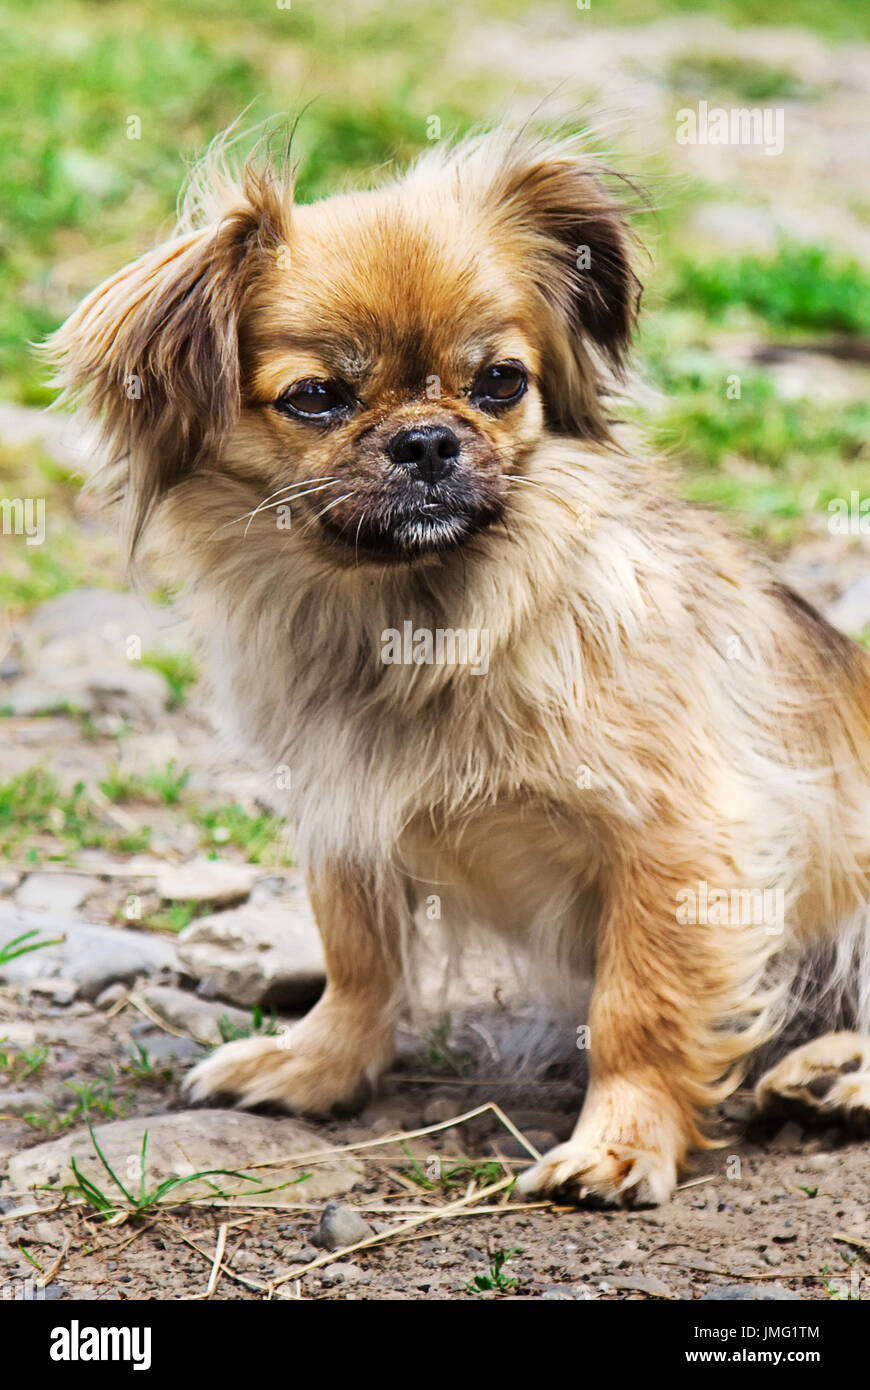 Porträt der Pekinese Hund auf einer Wiese im freien Stockfotografie - Alamy